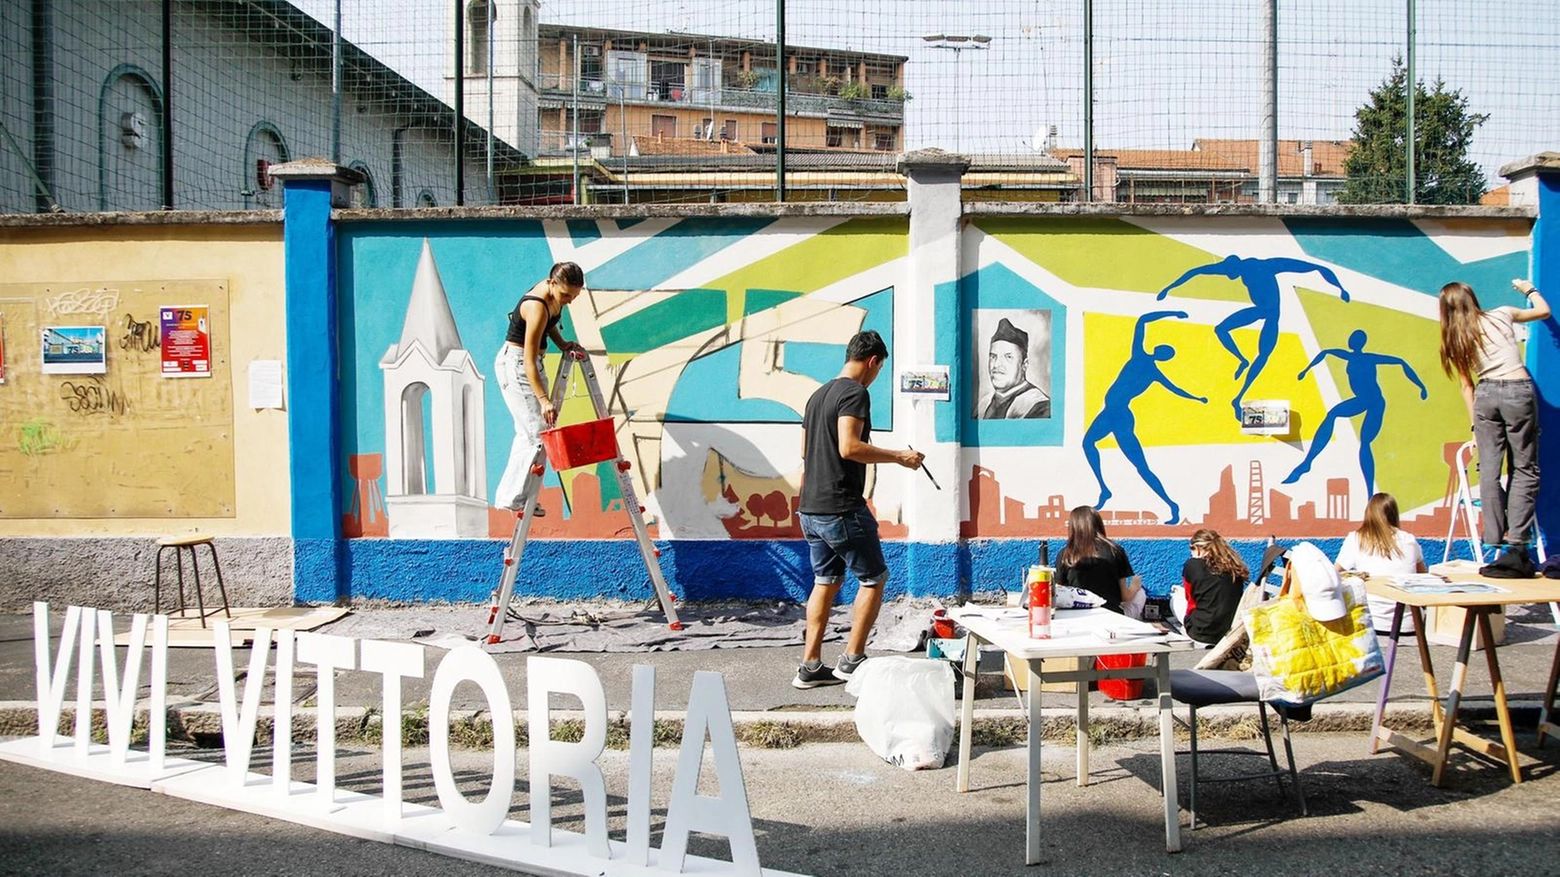 Un murale del writer Boris Veliz racconta il quartiere Vittoria